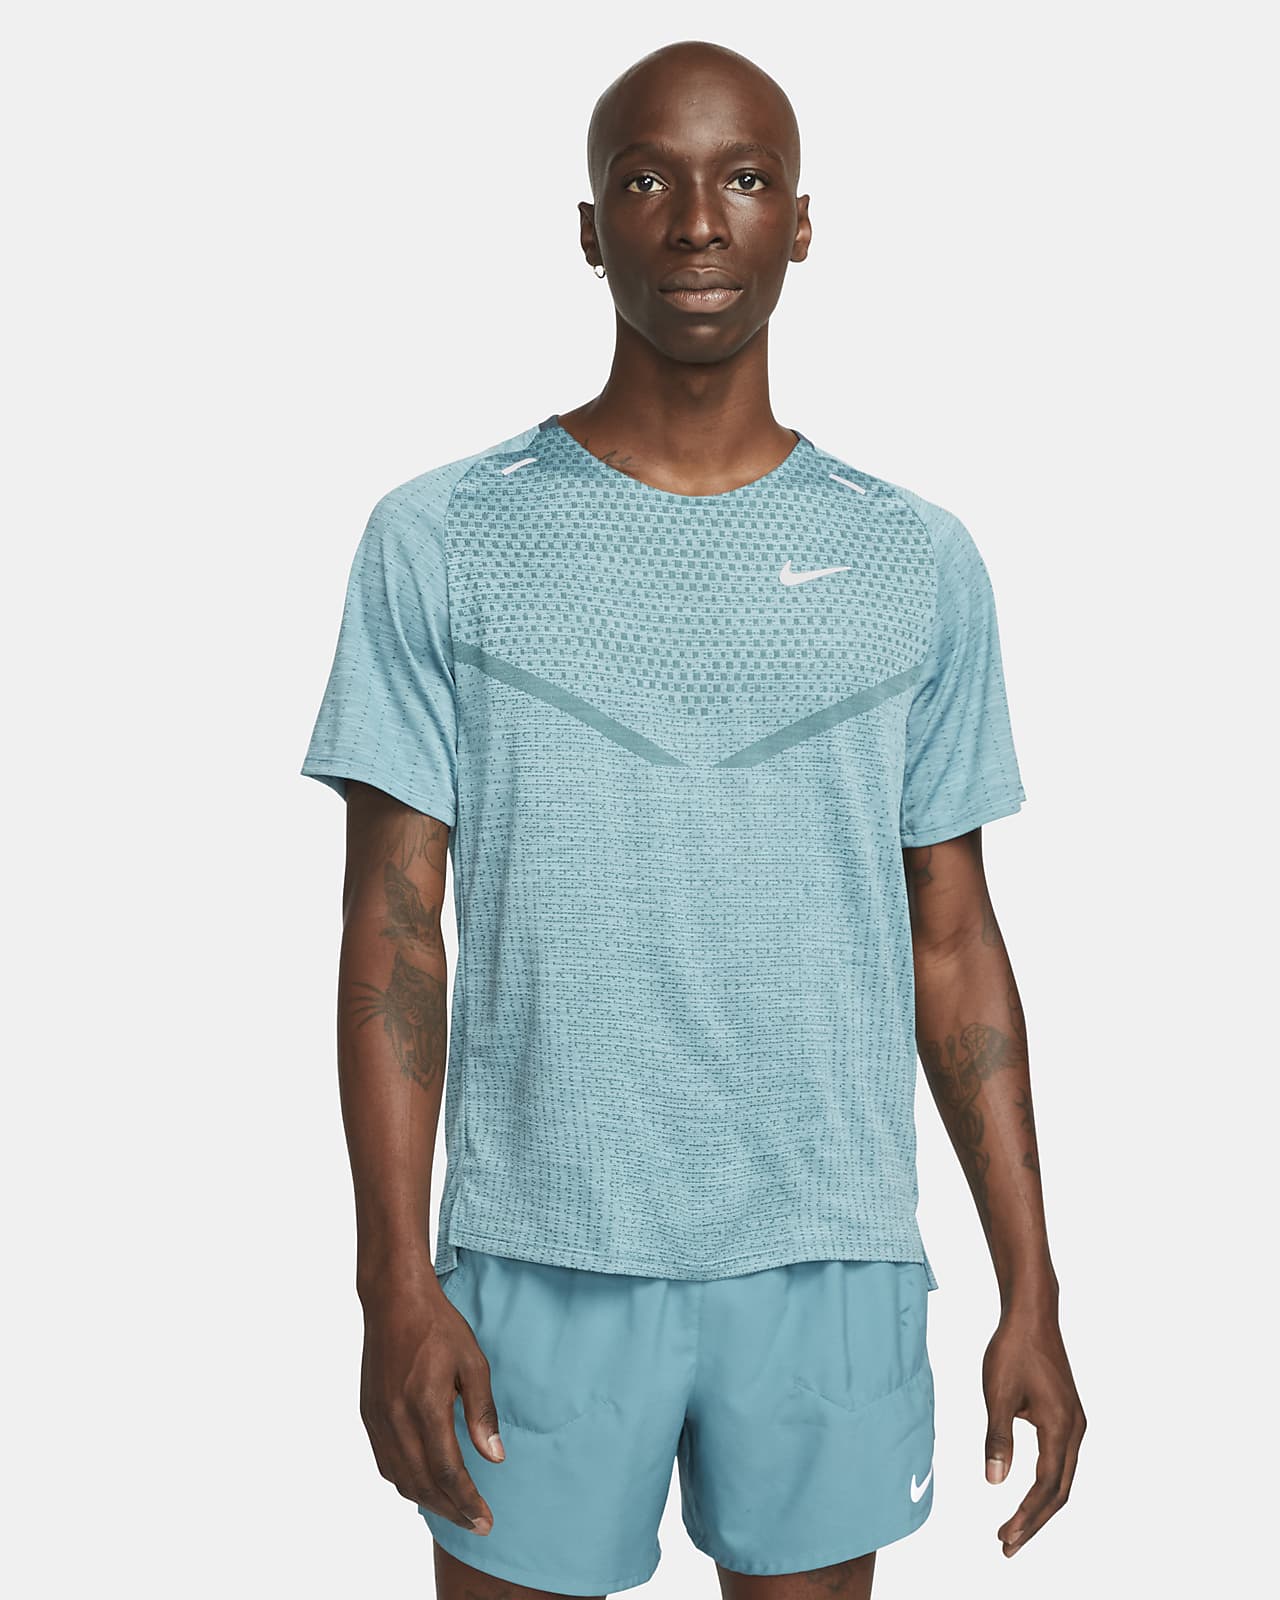 Nike Dri-FIT ADV TechKnit Ultra 男款短袖跑步上衣